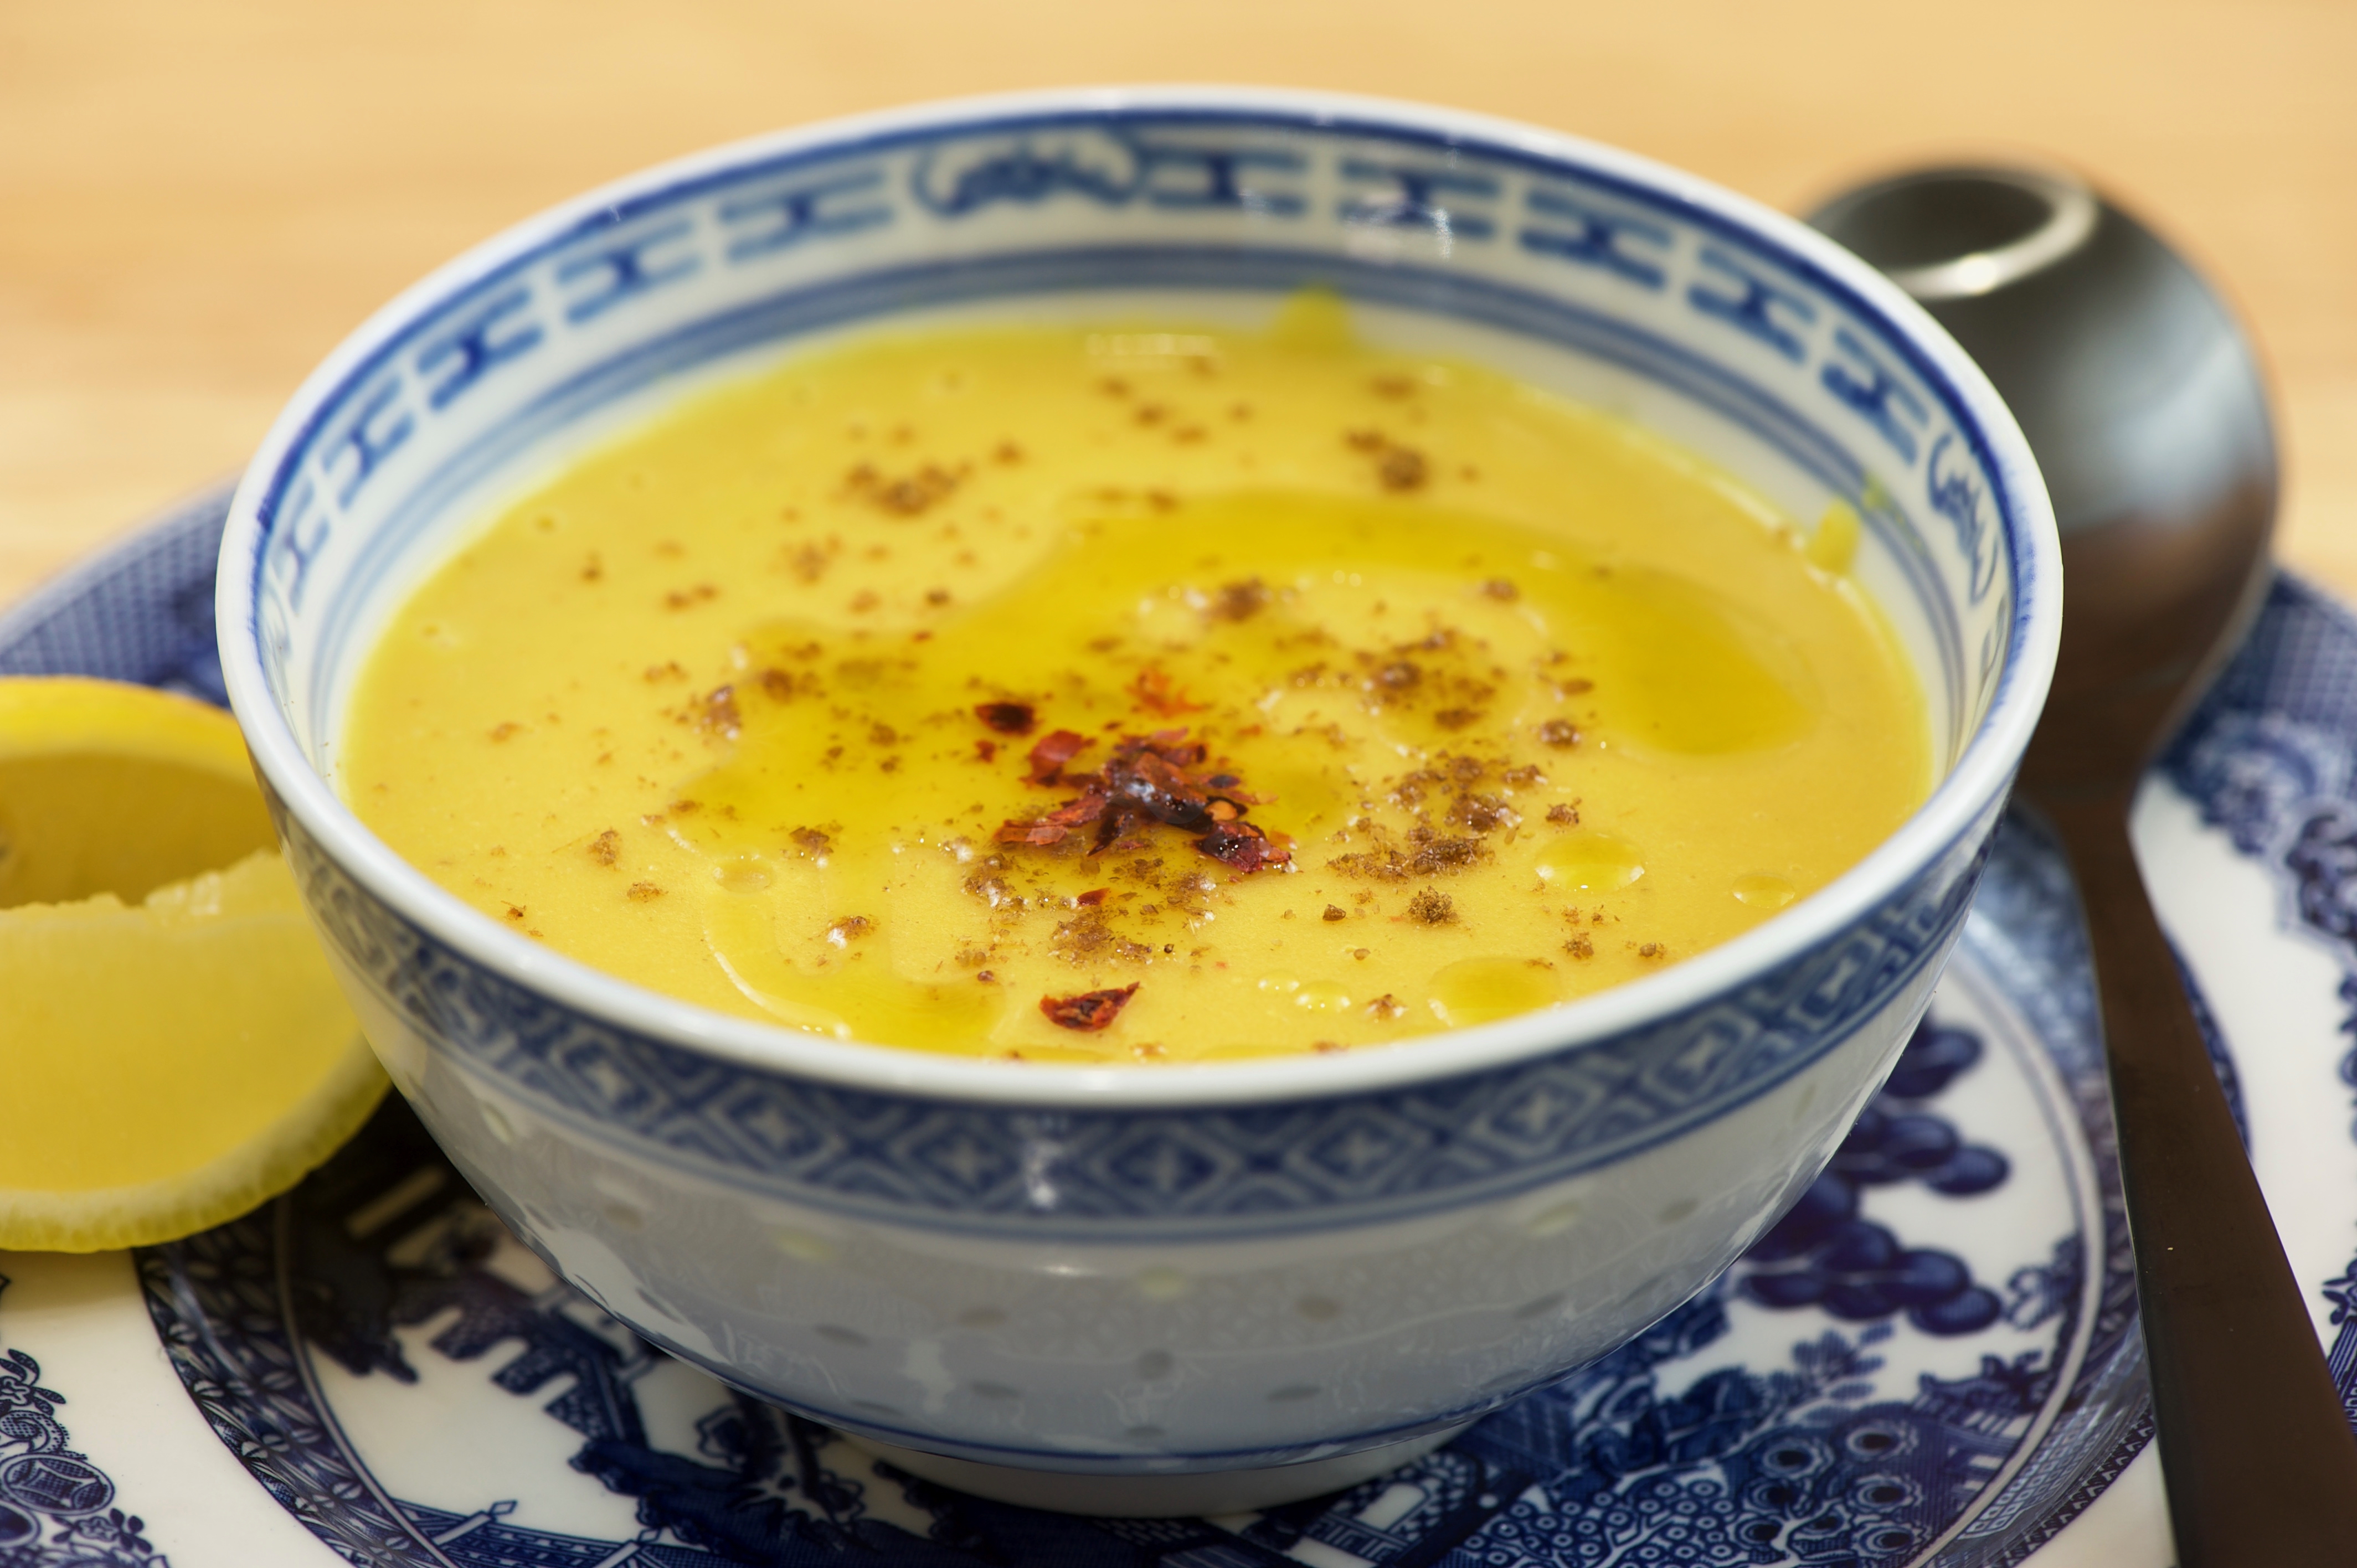 Red lentil soup (شوربة العدس)